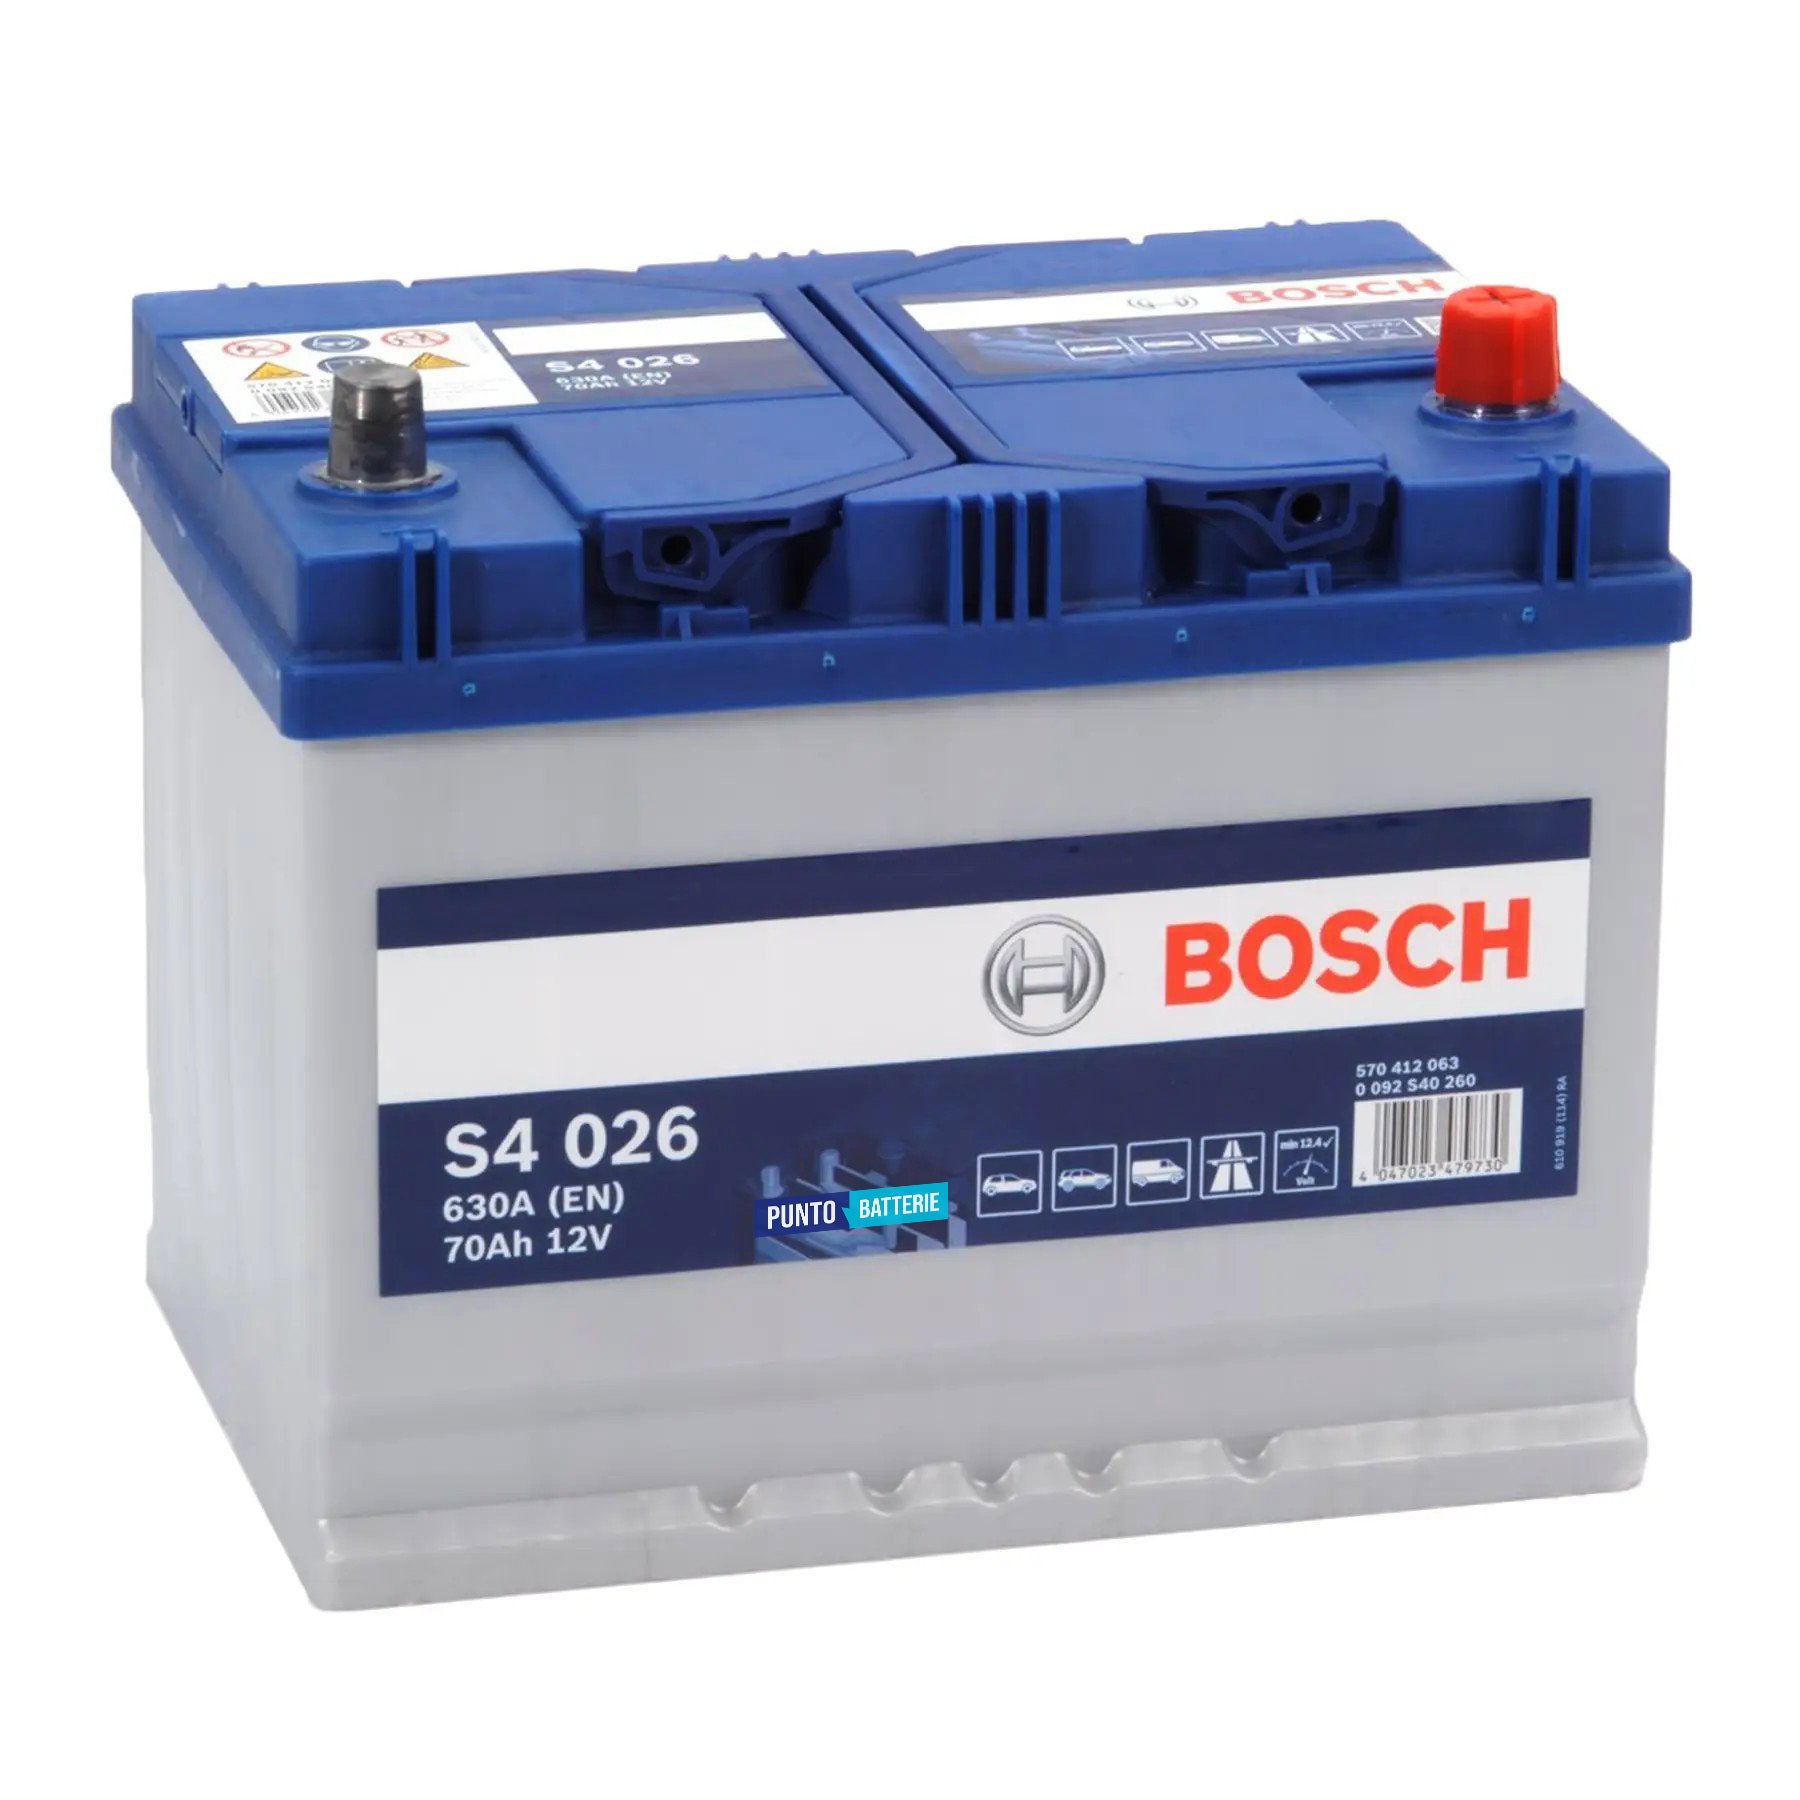 Batteria originale Bosch S4 S4 026, dimensioni 260 x 175 x 225, polo positivo a destra, 12 volt, 70 amperora, 630 ampere. Batteria per auto e veicoli leggeri.